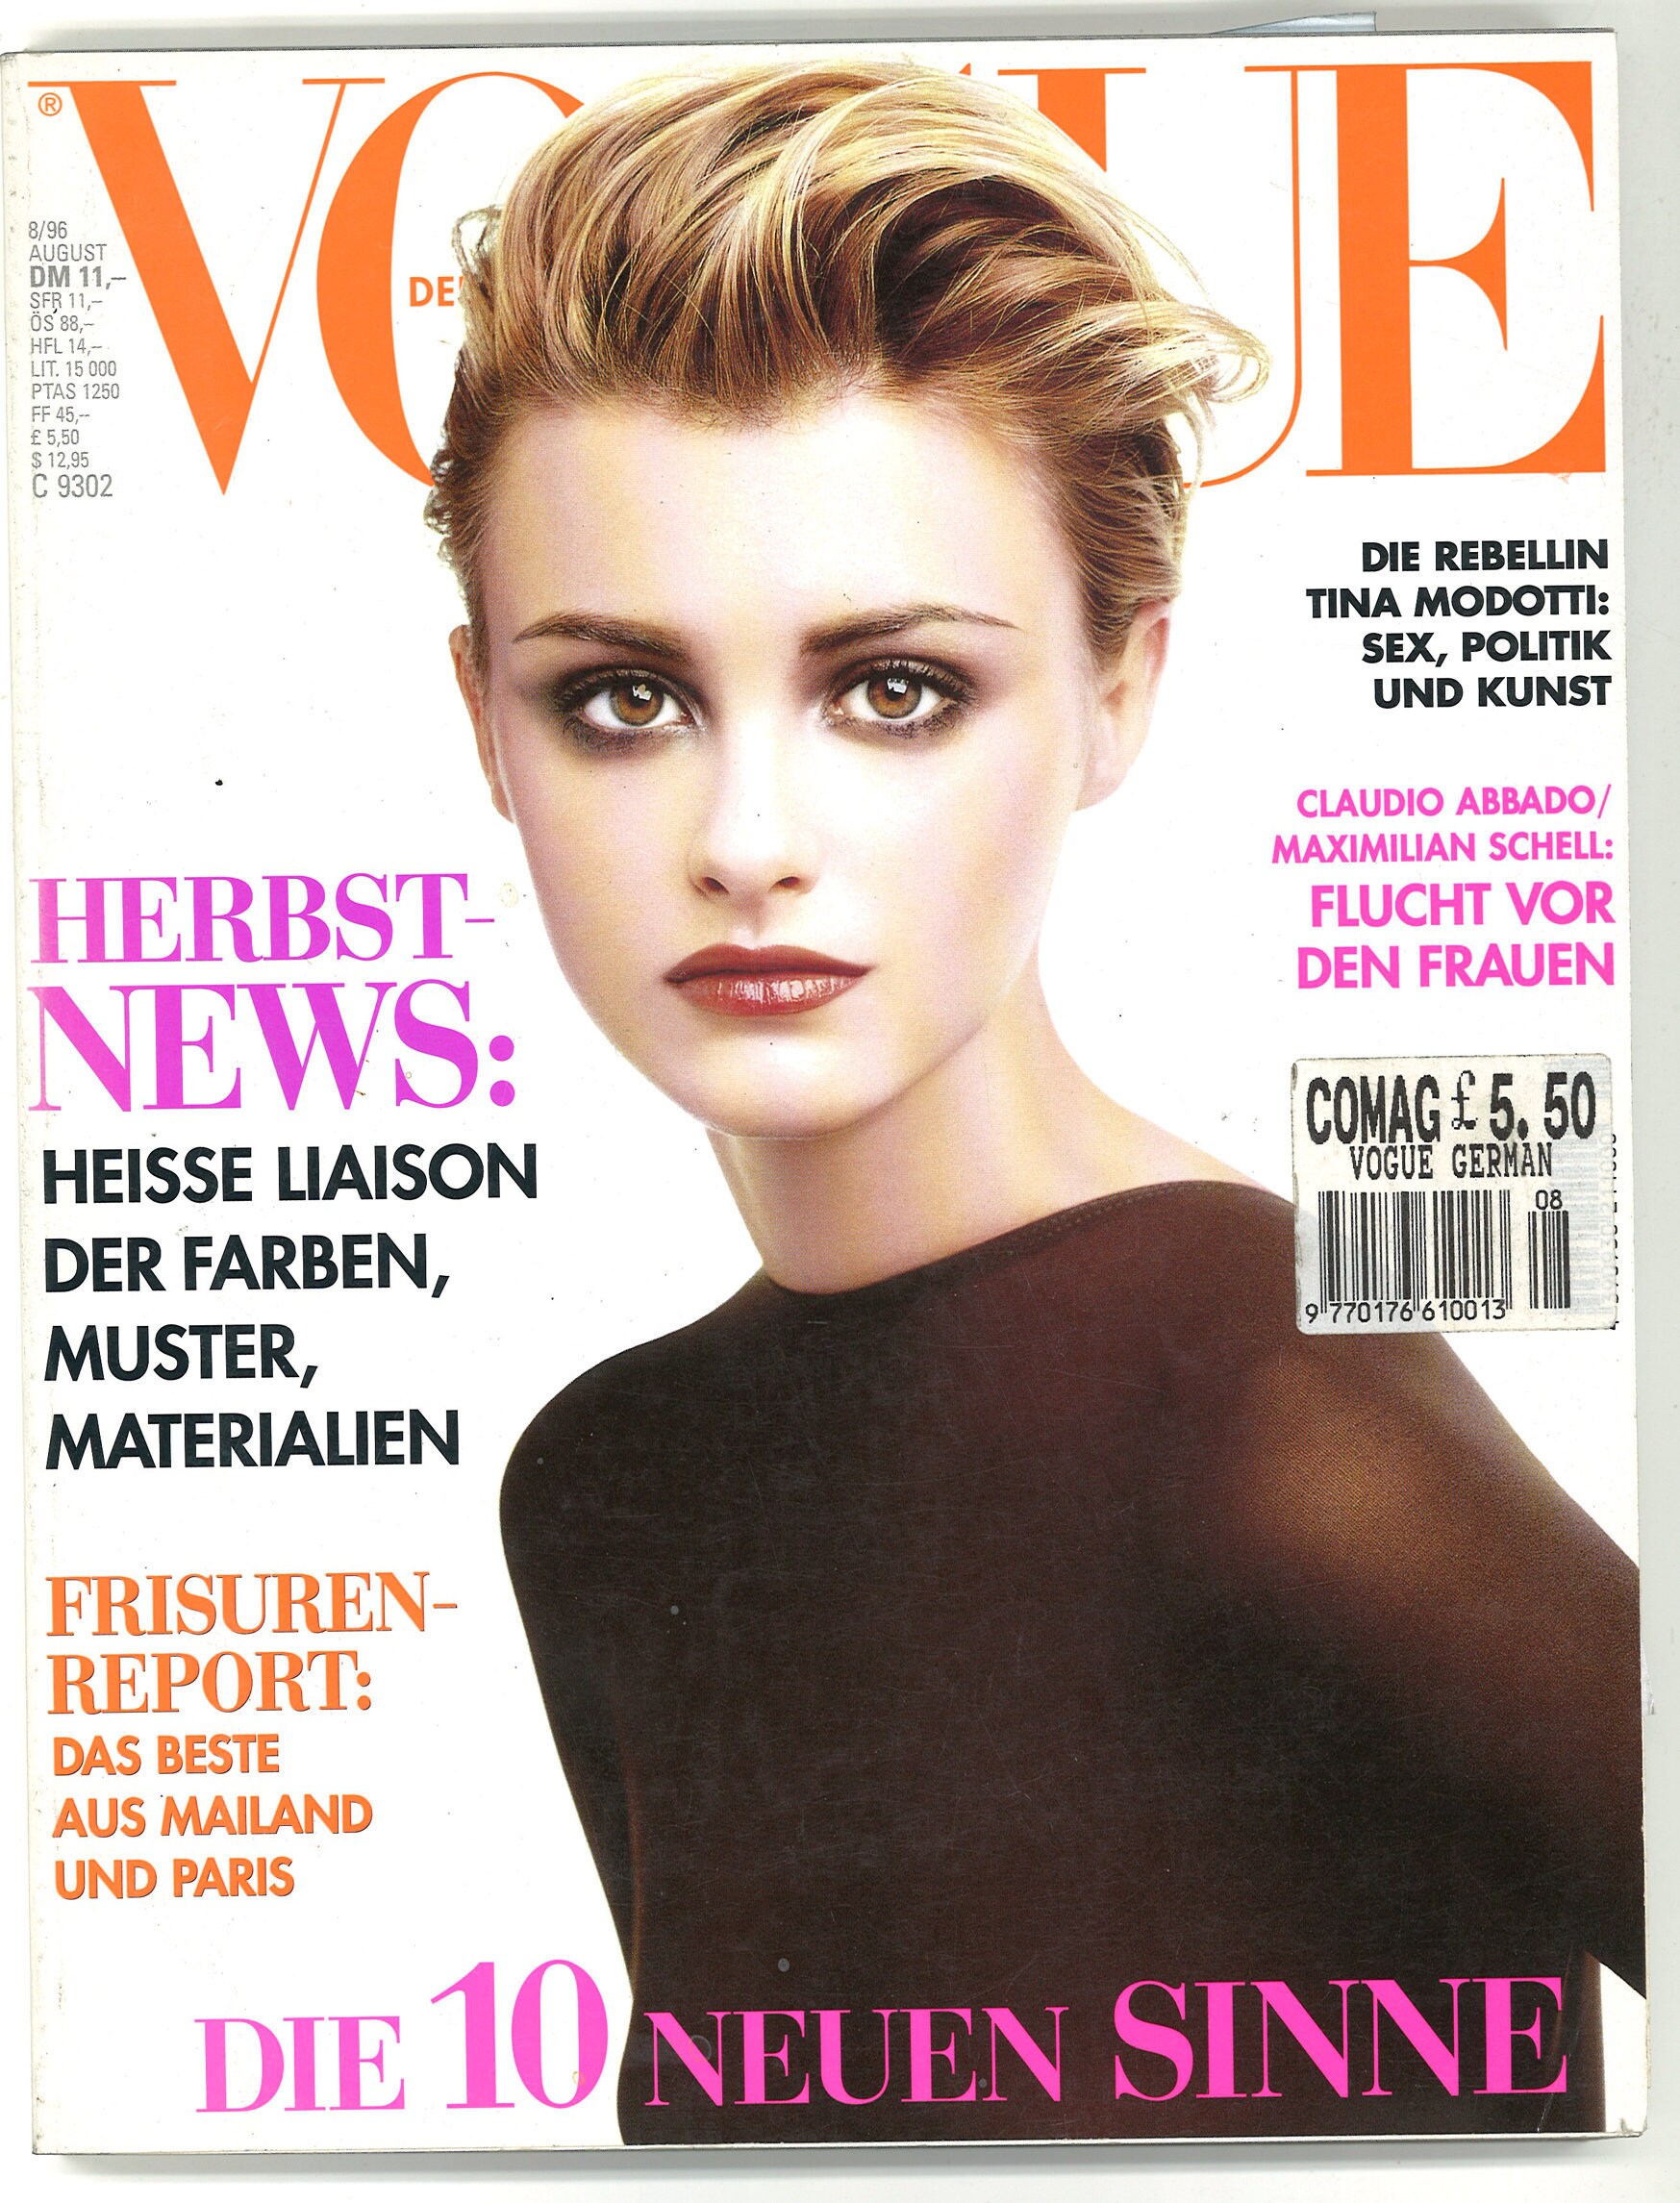 Vogue Deutsch Aug 1996 German Vintage Original Magazine Gift